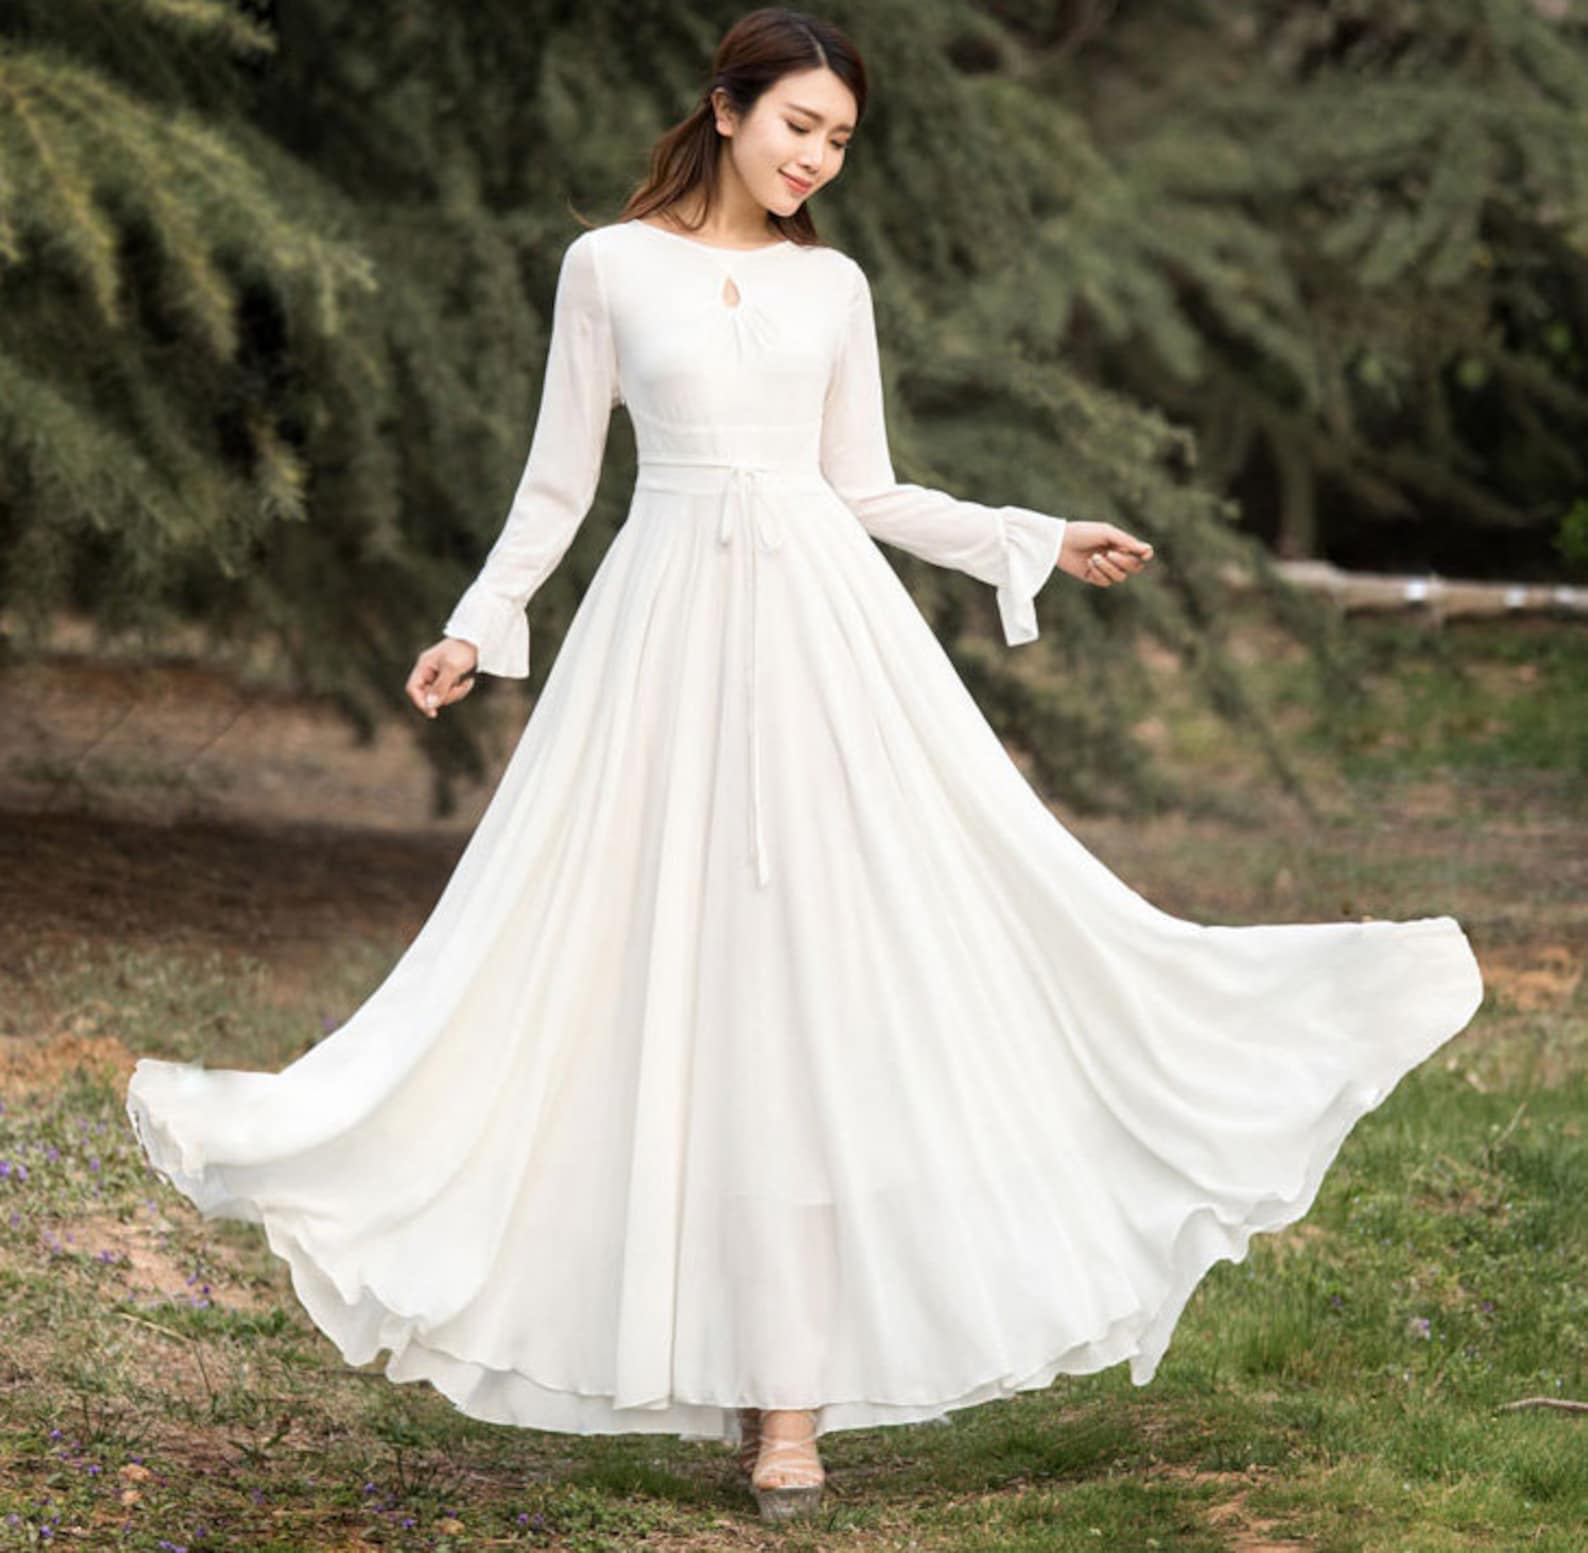 White Chiffon dress Long sleeve Bohemian Swing Chiffon dress | Etsy